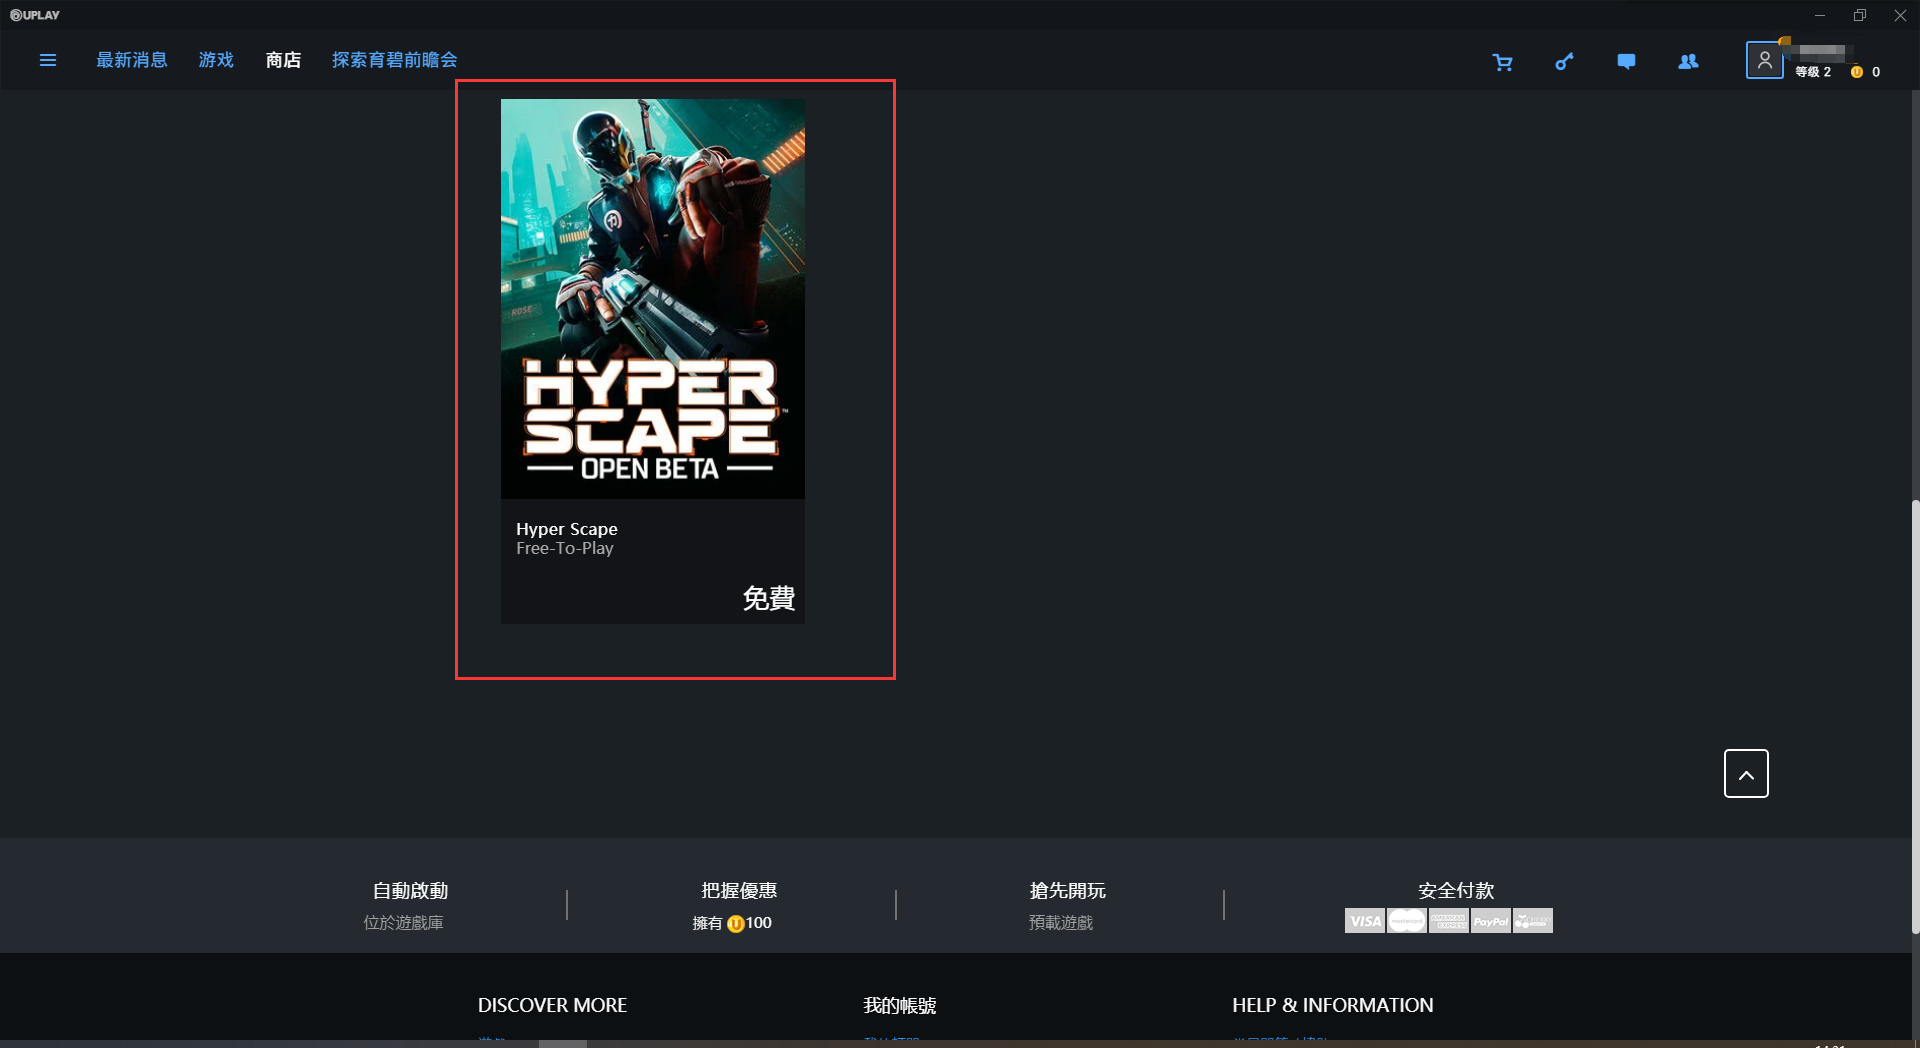 《超猎都市Hyper Scape》开启公测 如何免费下载图文指南